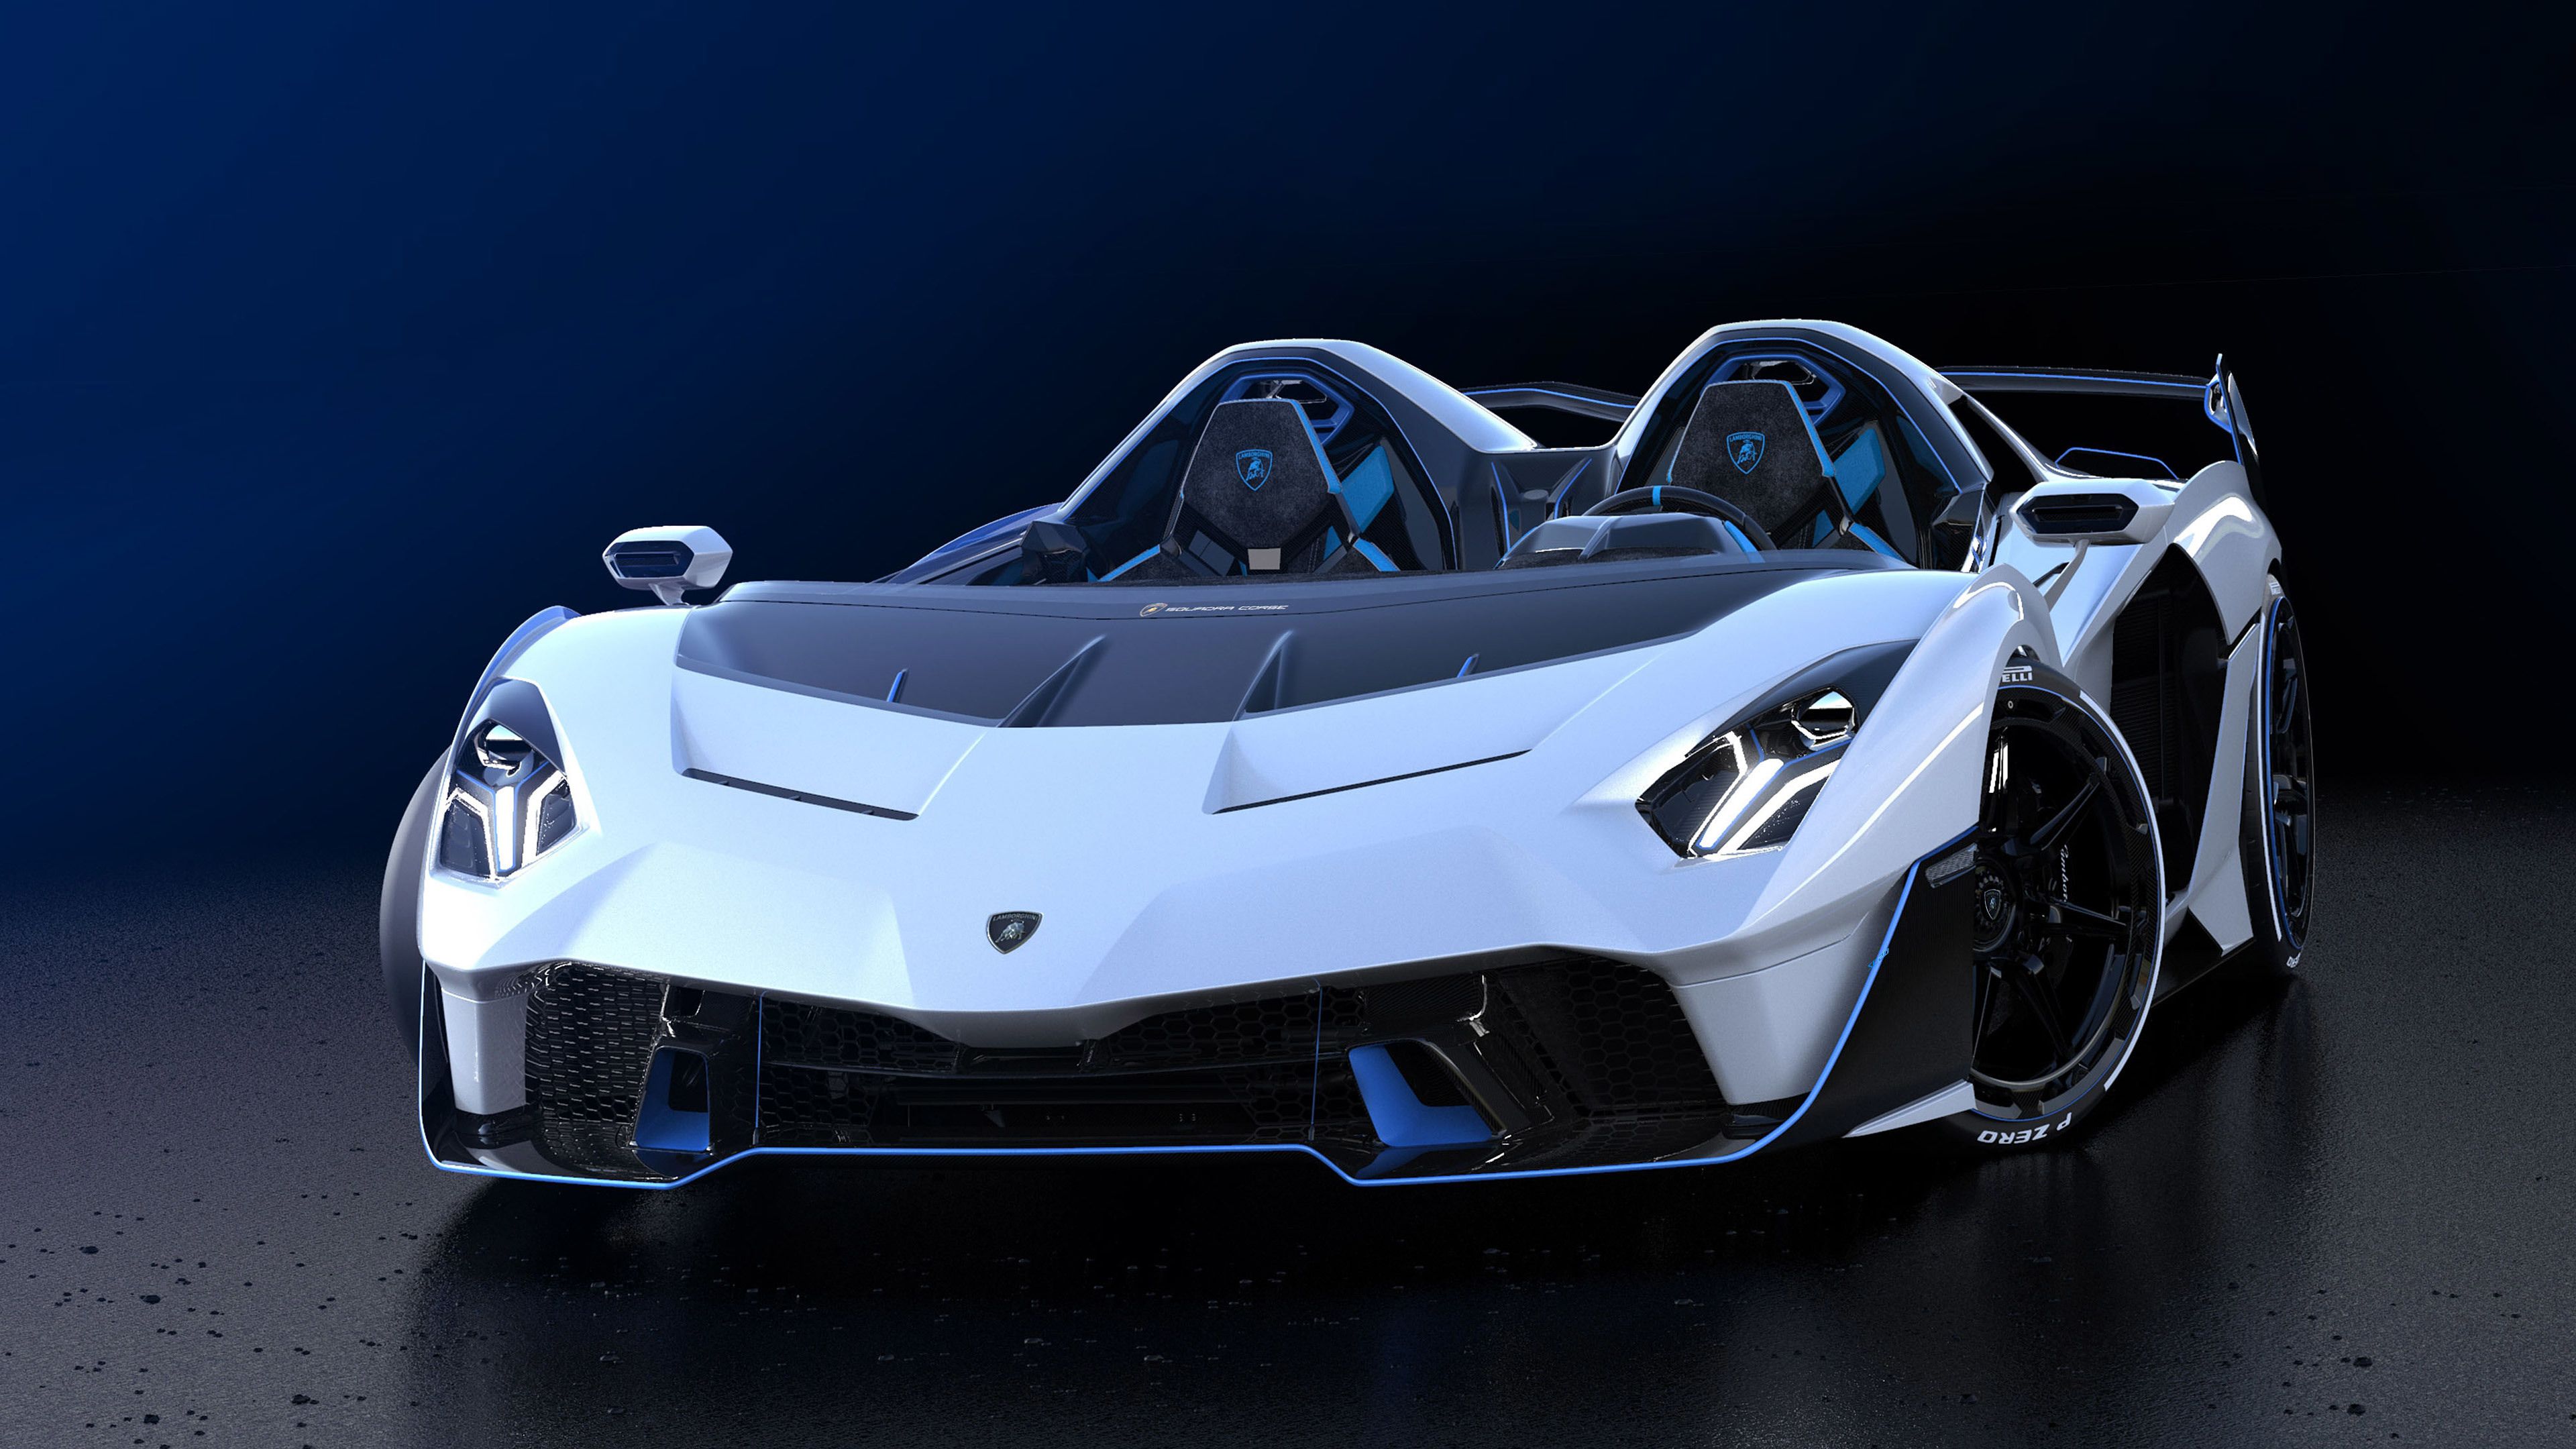 Desktop Wallpaper Car, Lamborghini Sc HD Image, Picture, Background, E75cbc